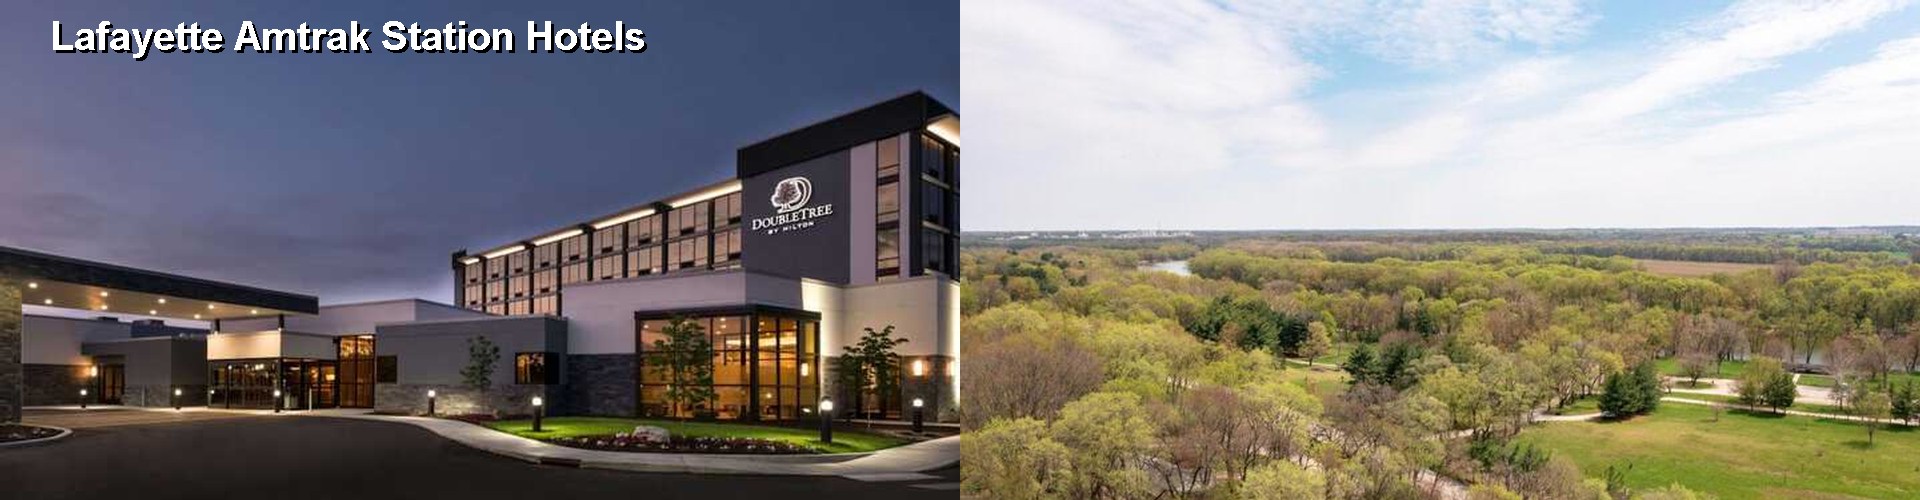 5 Best Hotels near Lafayette Amtrak Station